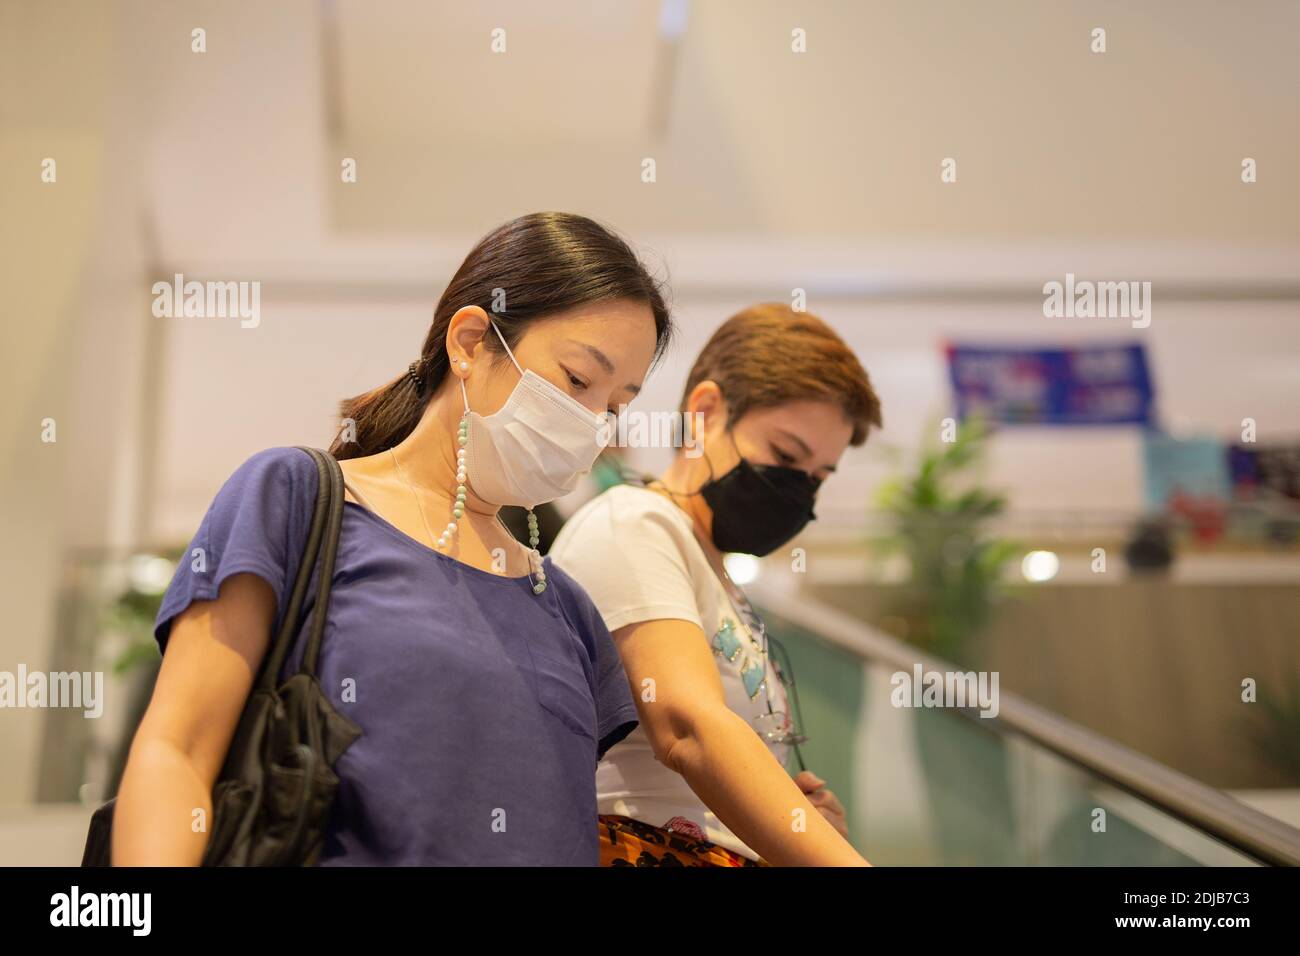 Asiatische Frauen in Schutzmaske stehen auf Rolltreppe im Einkaufszentrum. Stockfoto